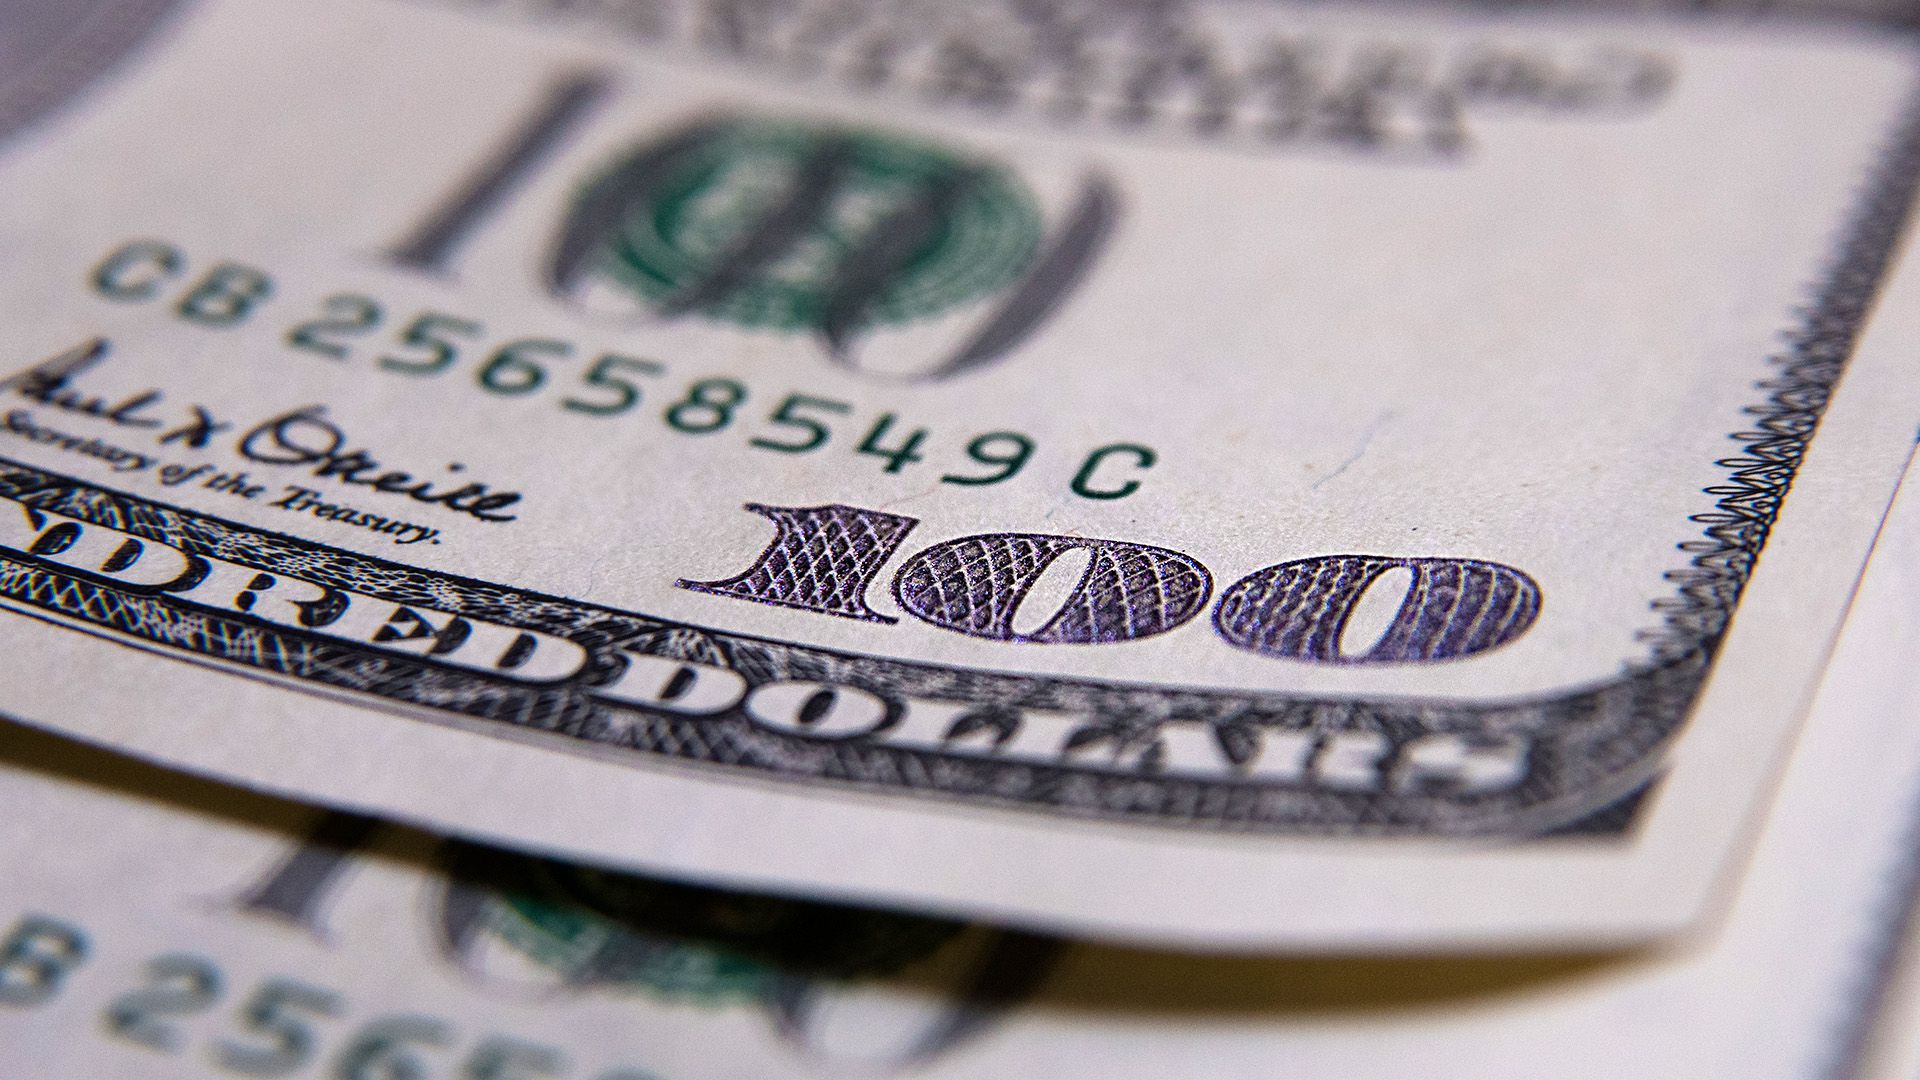 En bancos y casas de cambio el dólar subió 13 centavos a $58,15, según el promedio del BCRA